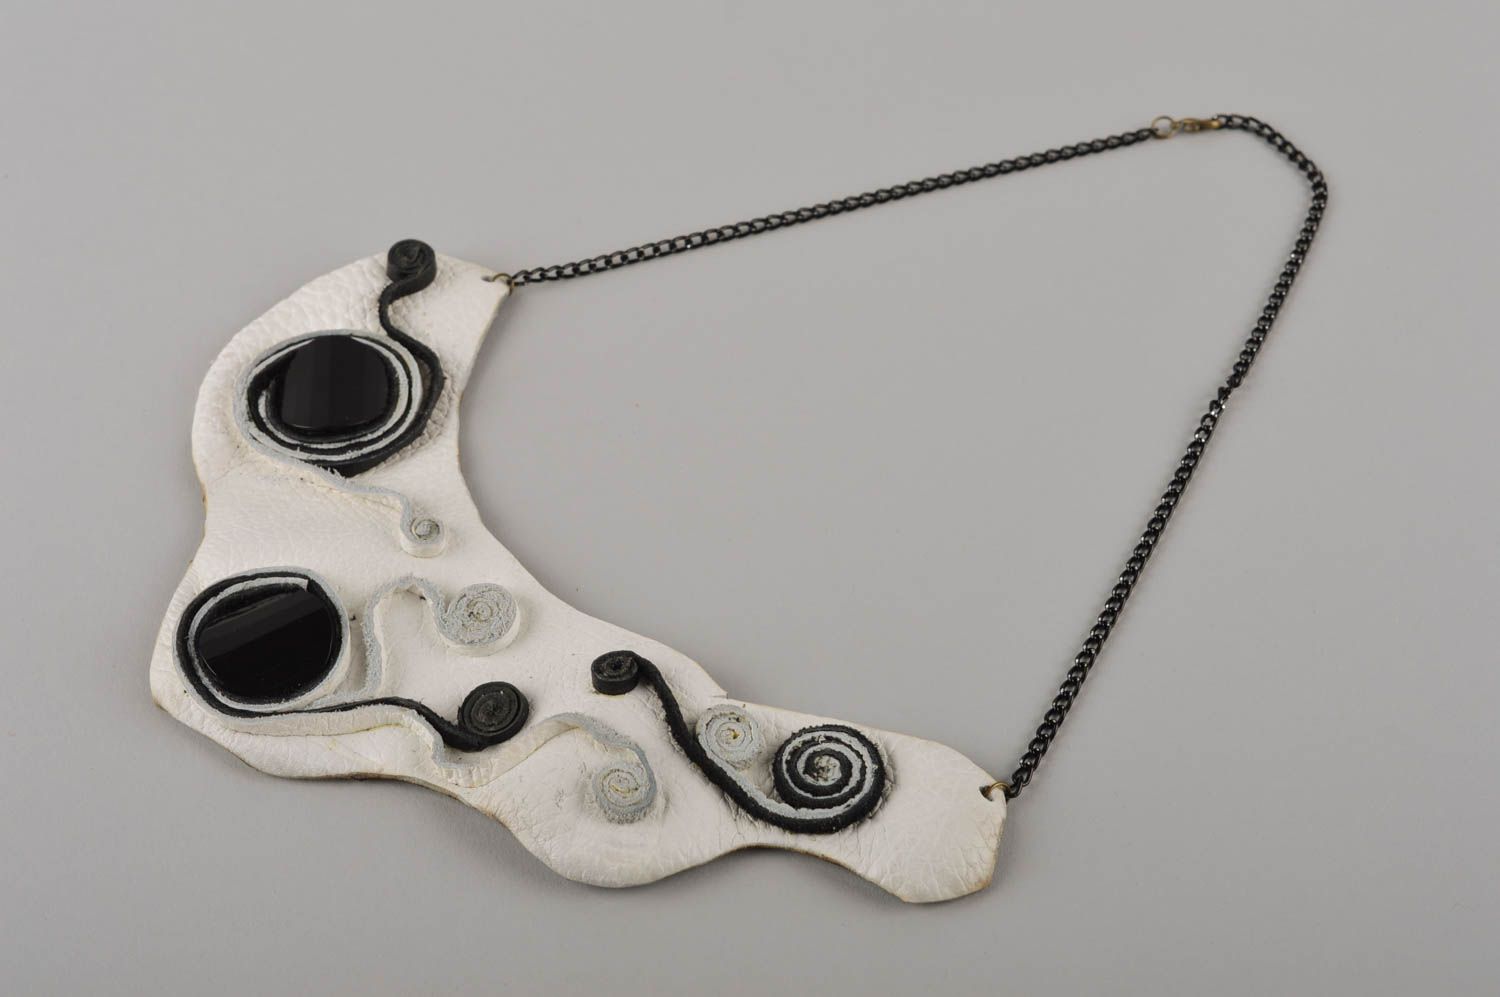 Collier en cuir Bijou fait main blanc noir sur chaîne métallique Cadeau femme photo 4